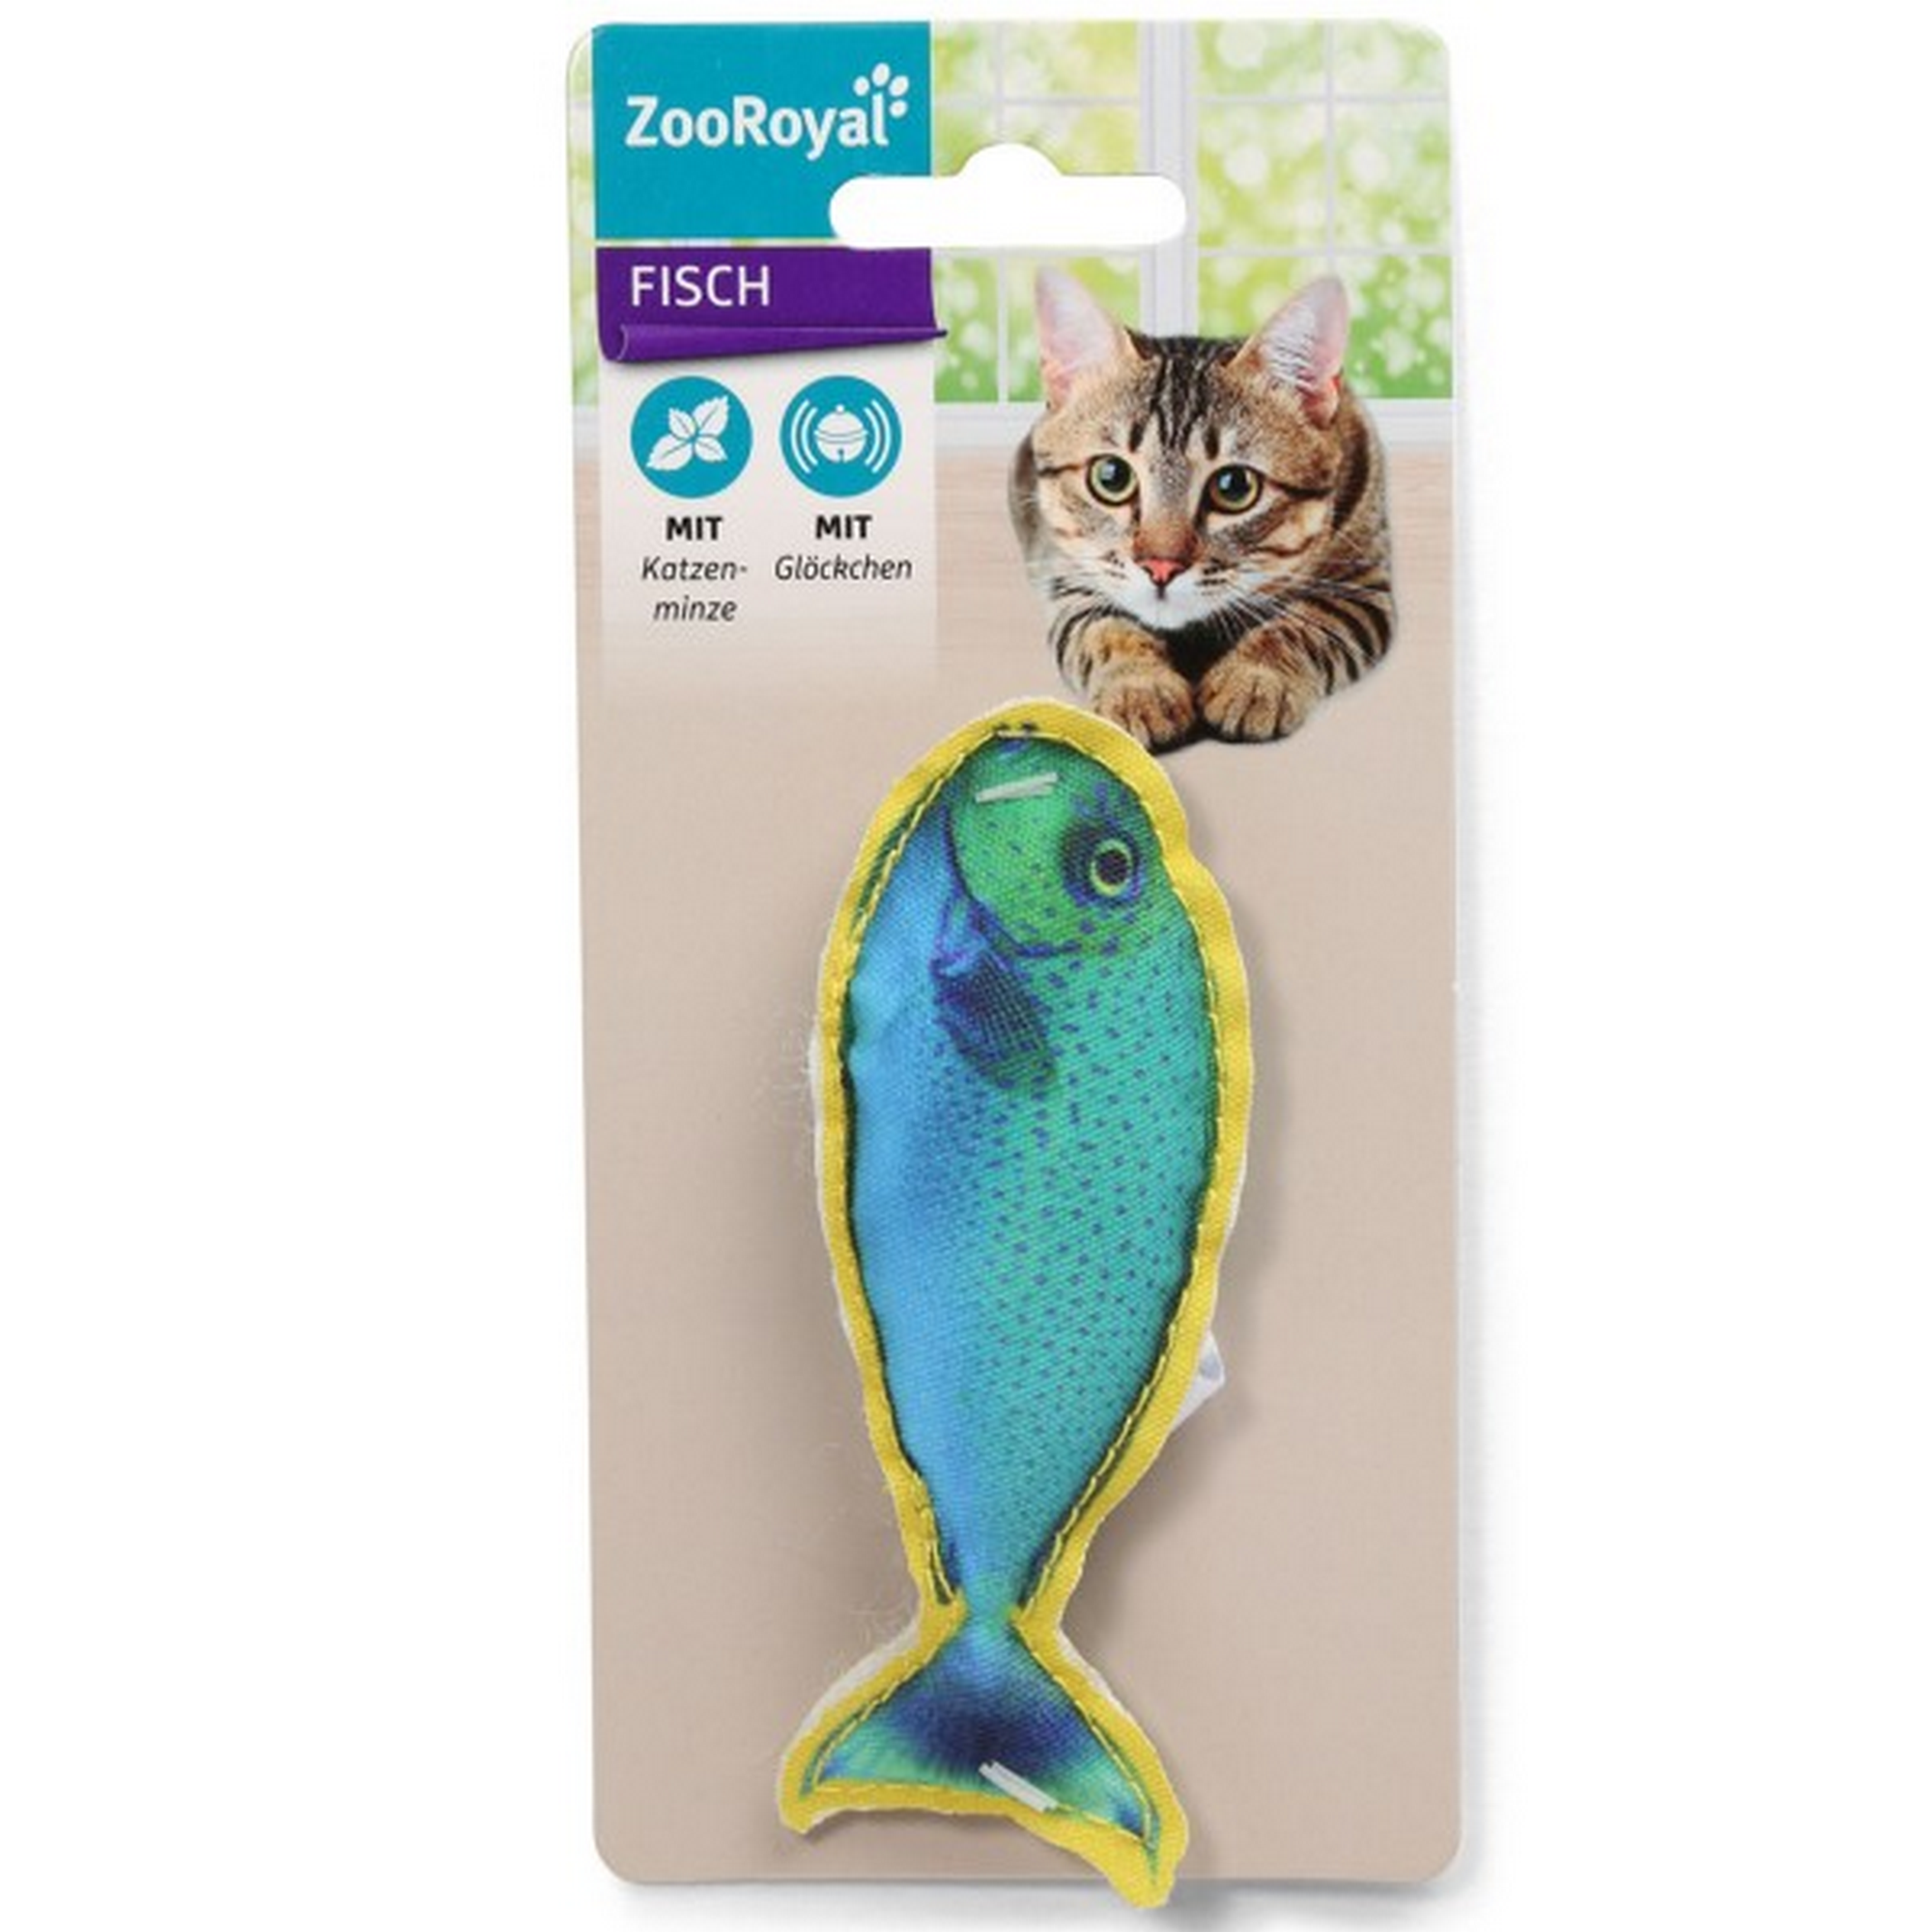 Katzenspielzeug Fisch mit Glöckchen und Katzenminze blau/gelb 45 x 110 mm + product picture